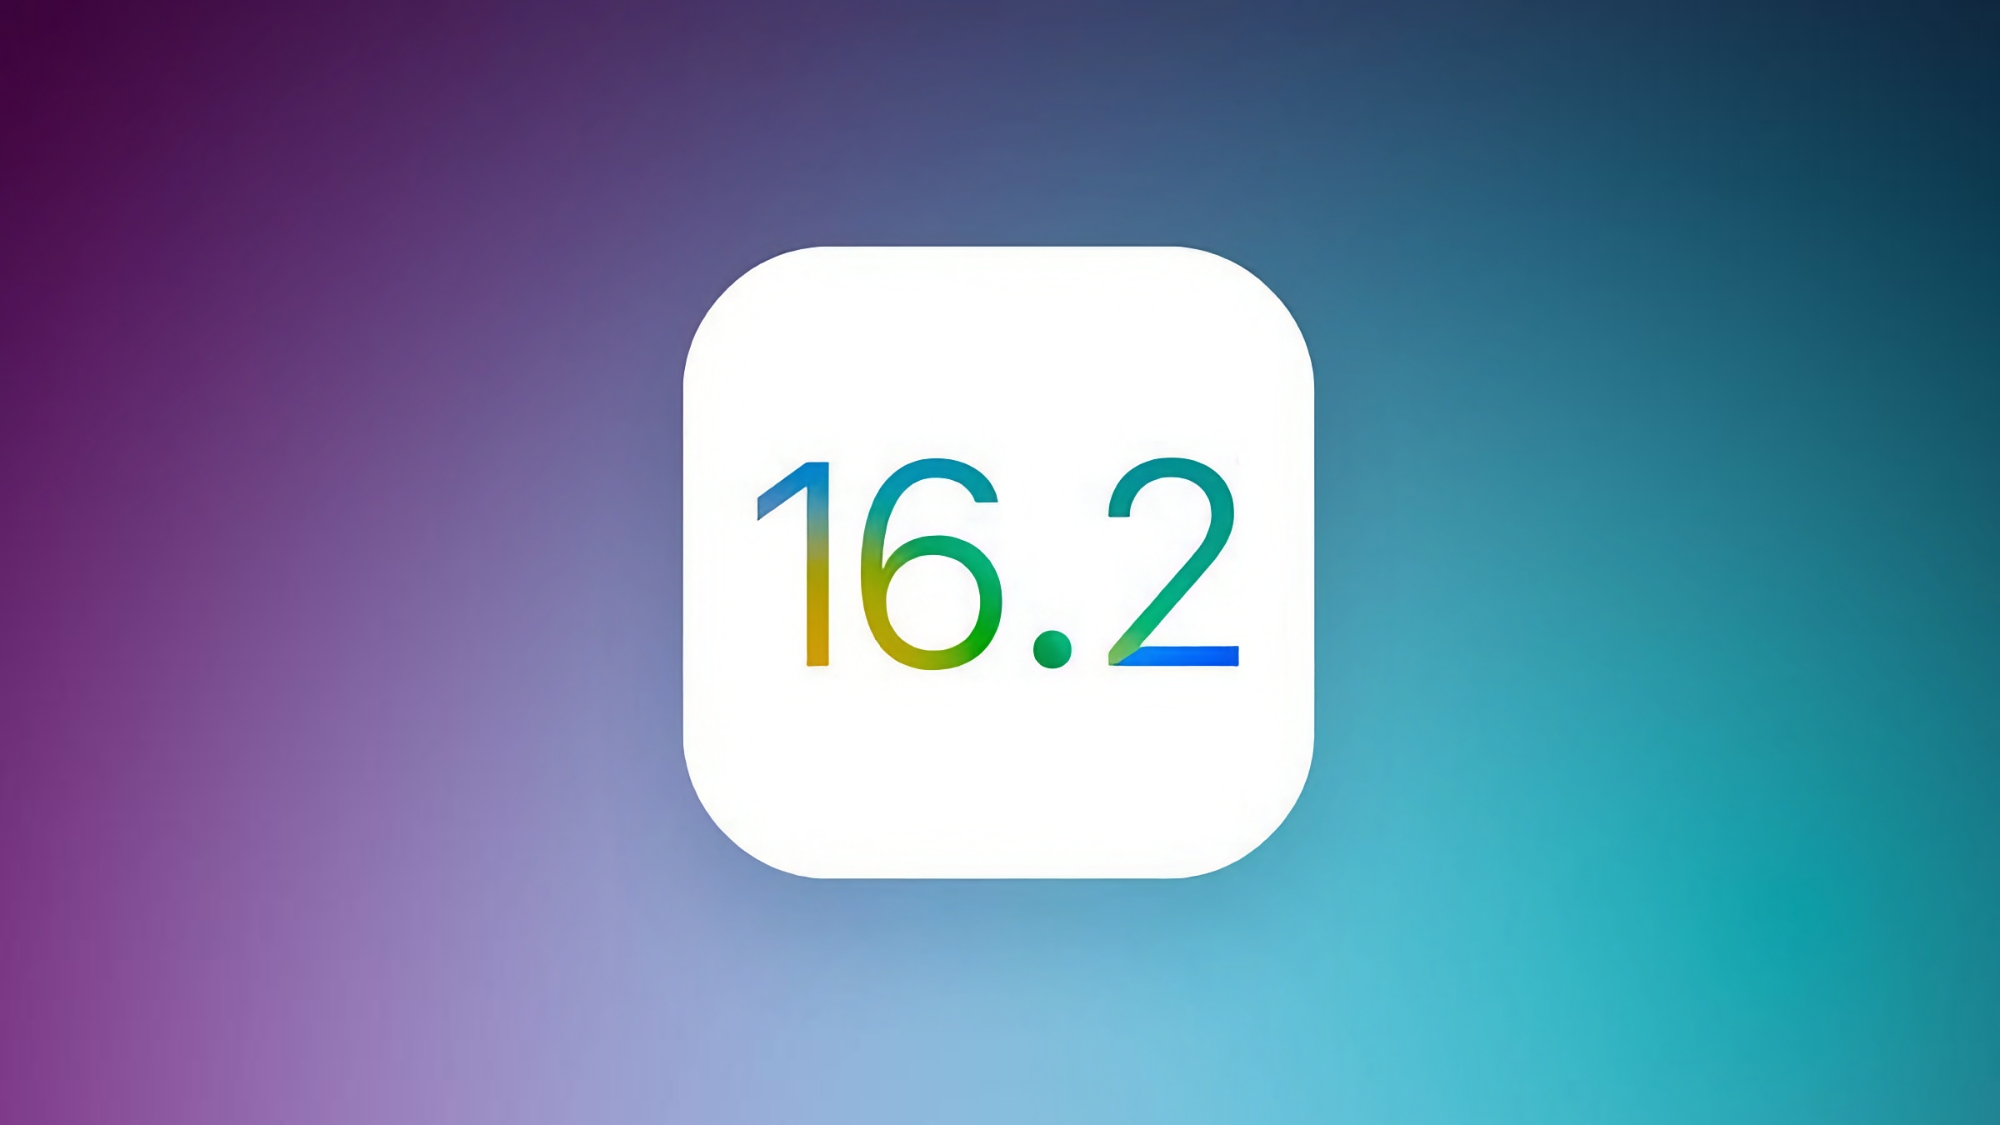 Quando Apple prevede di rilasciare una versione stabile di iOS 16.2 con nuove funzionalità